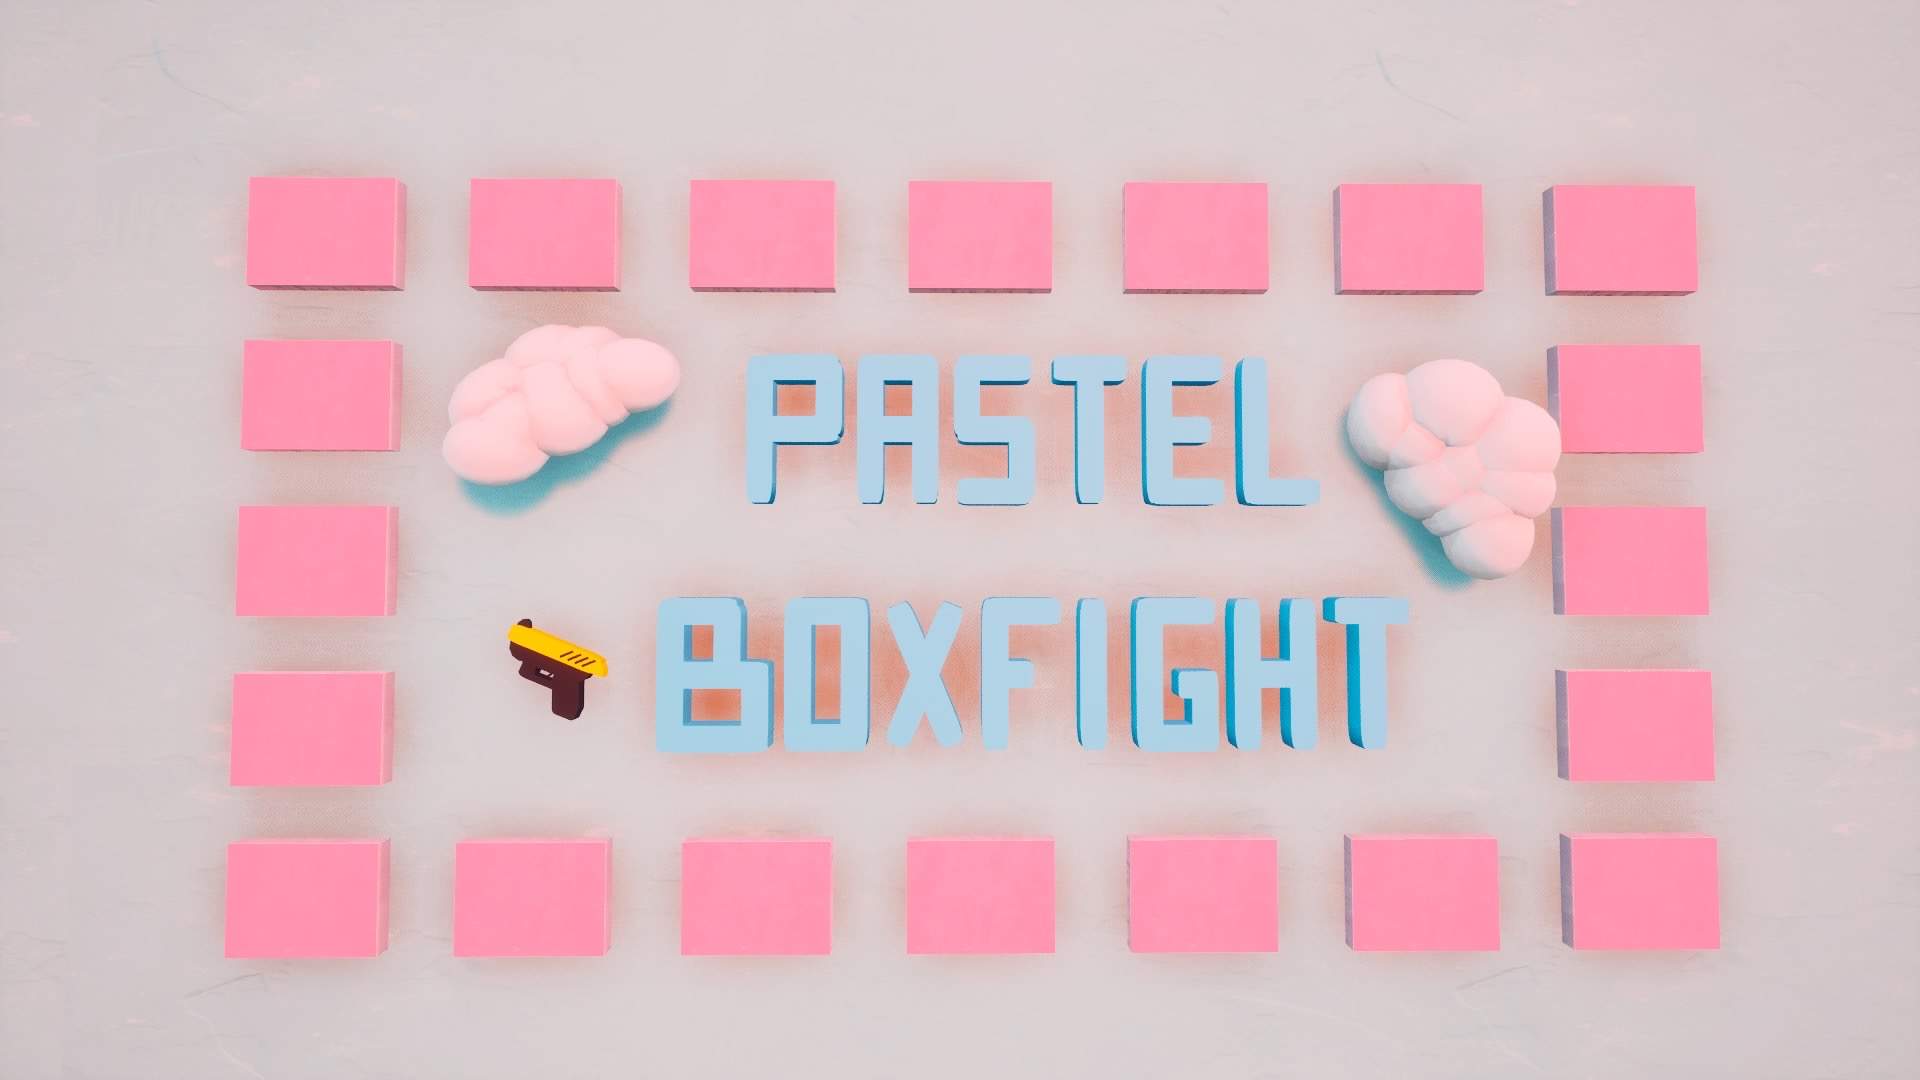 PASTEL BOXFIGHT